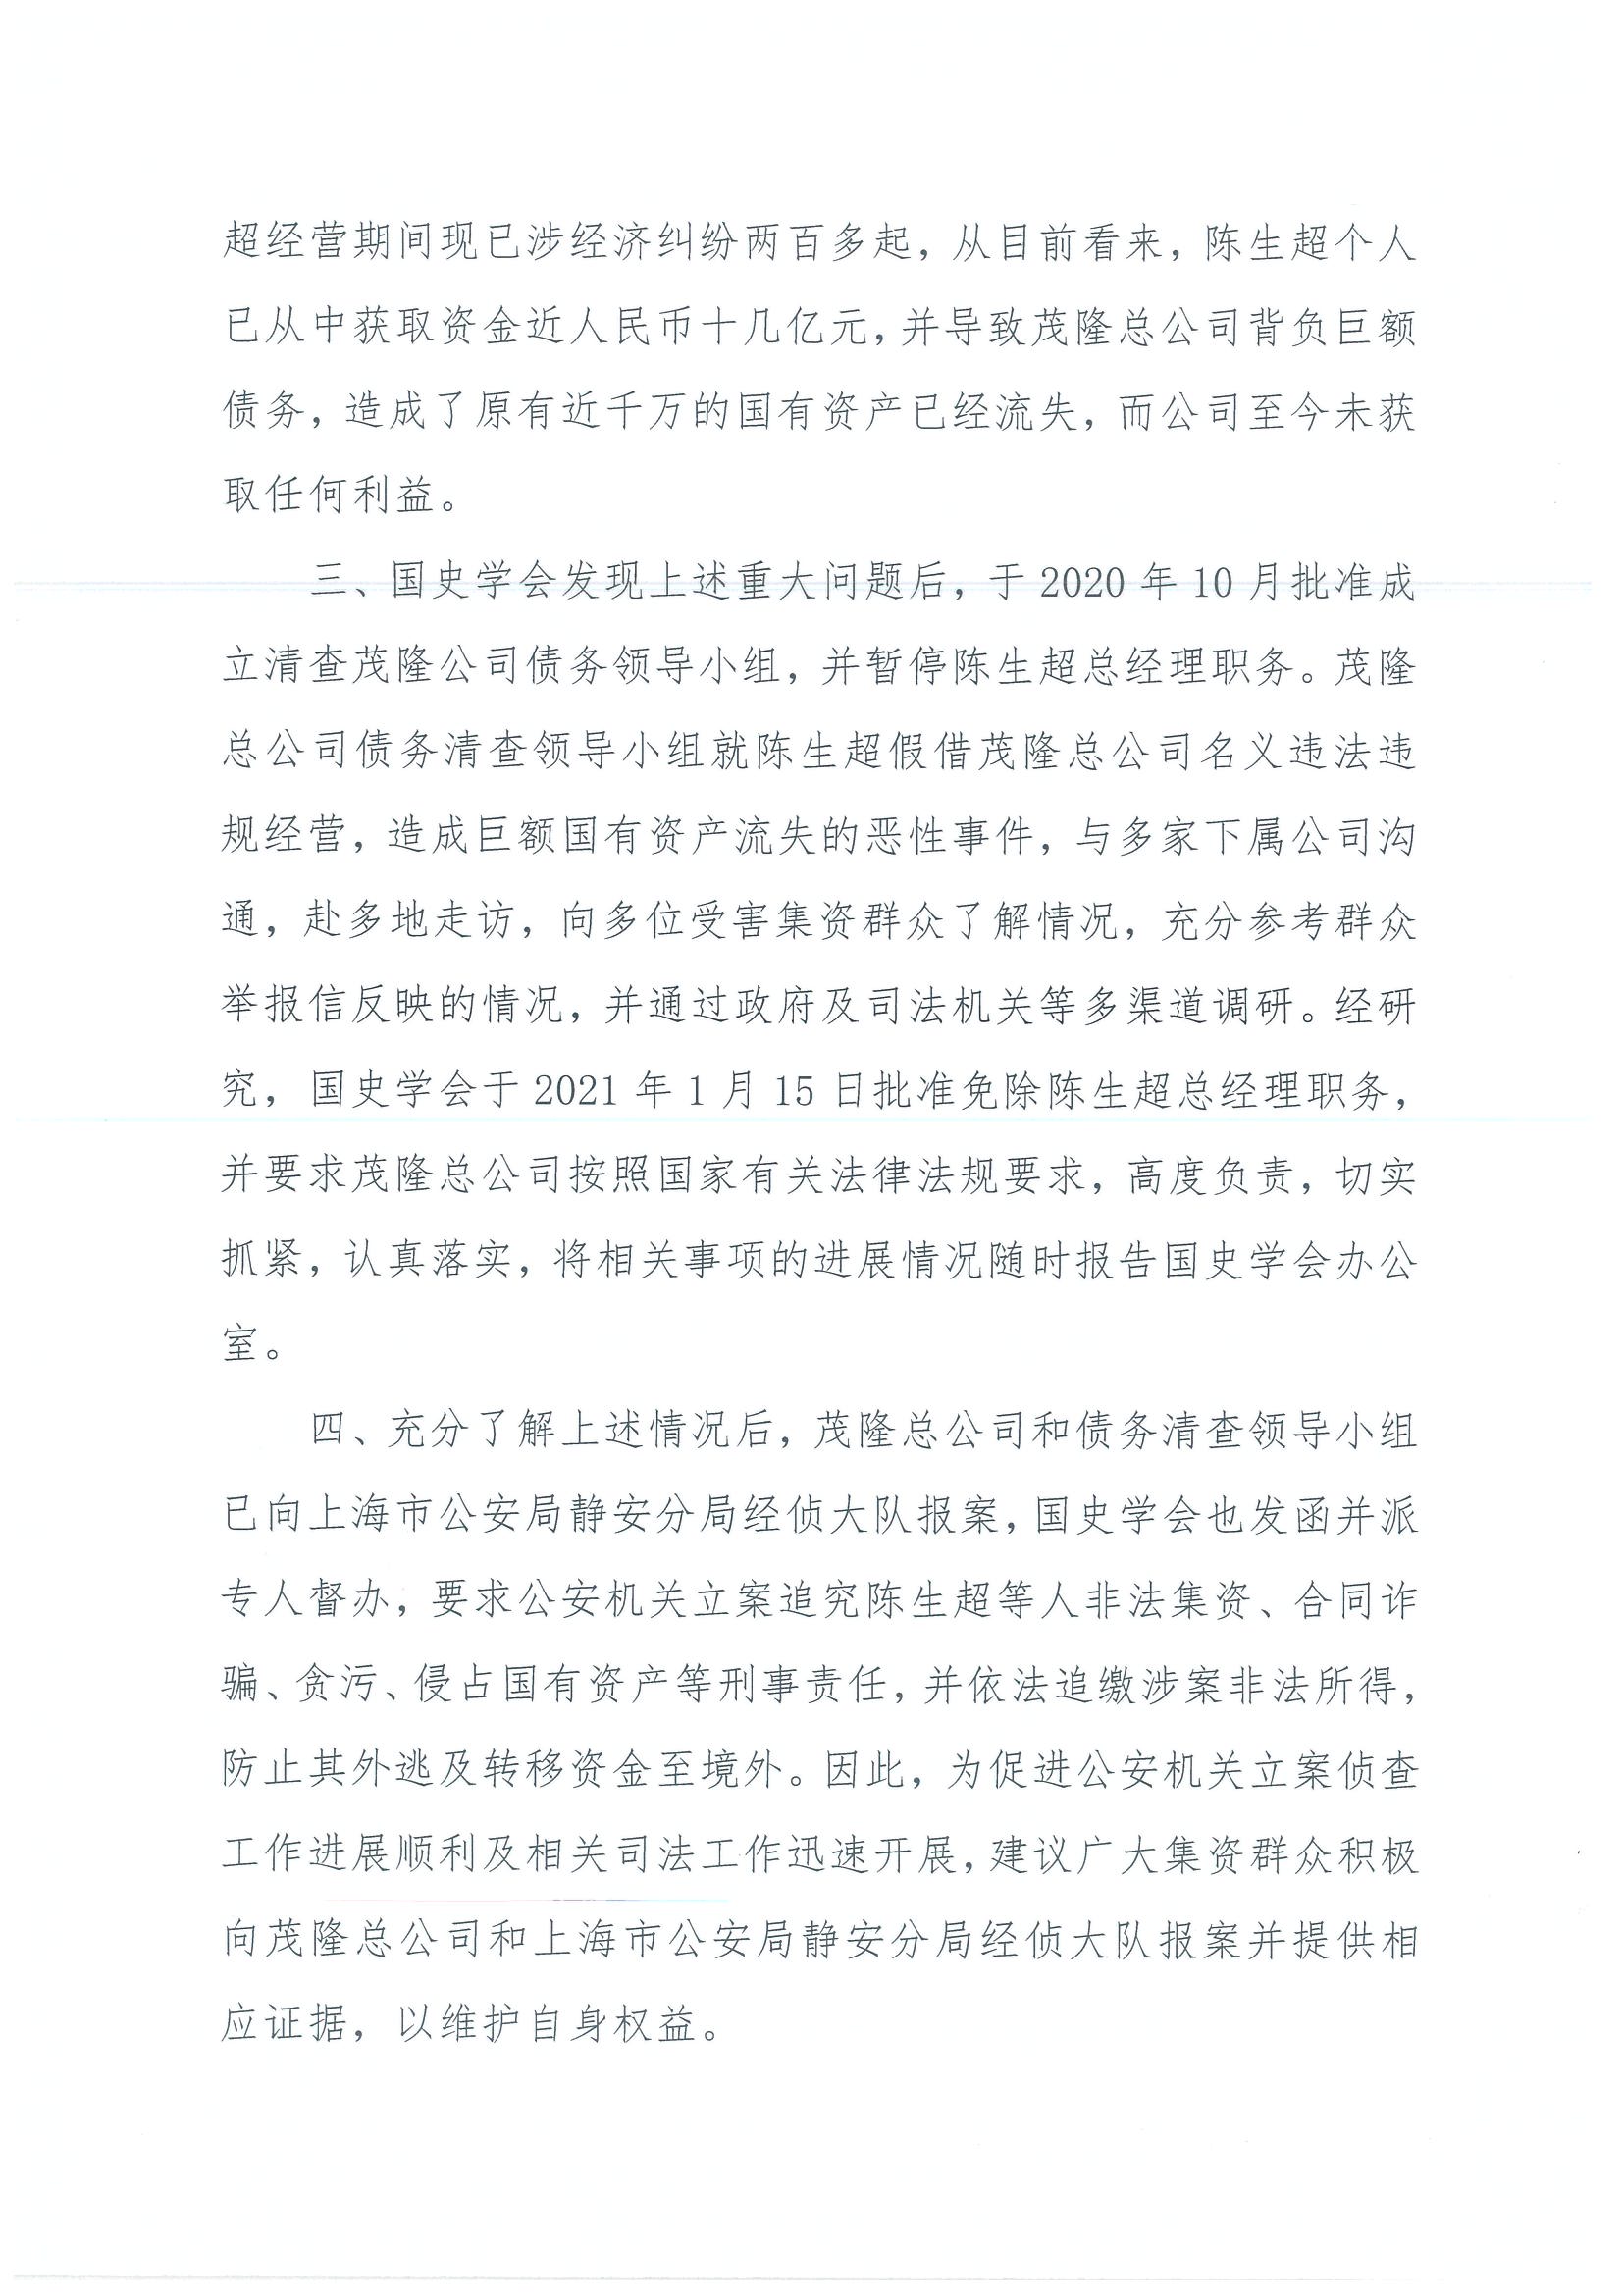 茂隆实业贸易发展总公司关于陈生超经营期间违法行为的严正声明(图2)